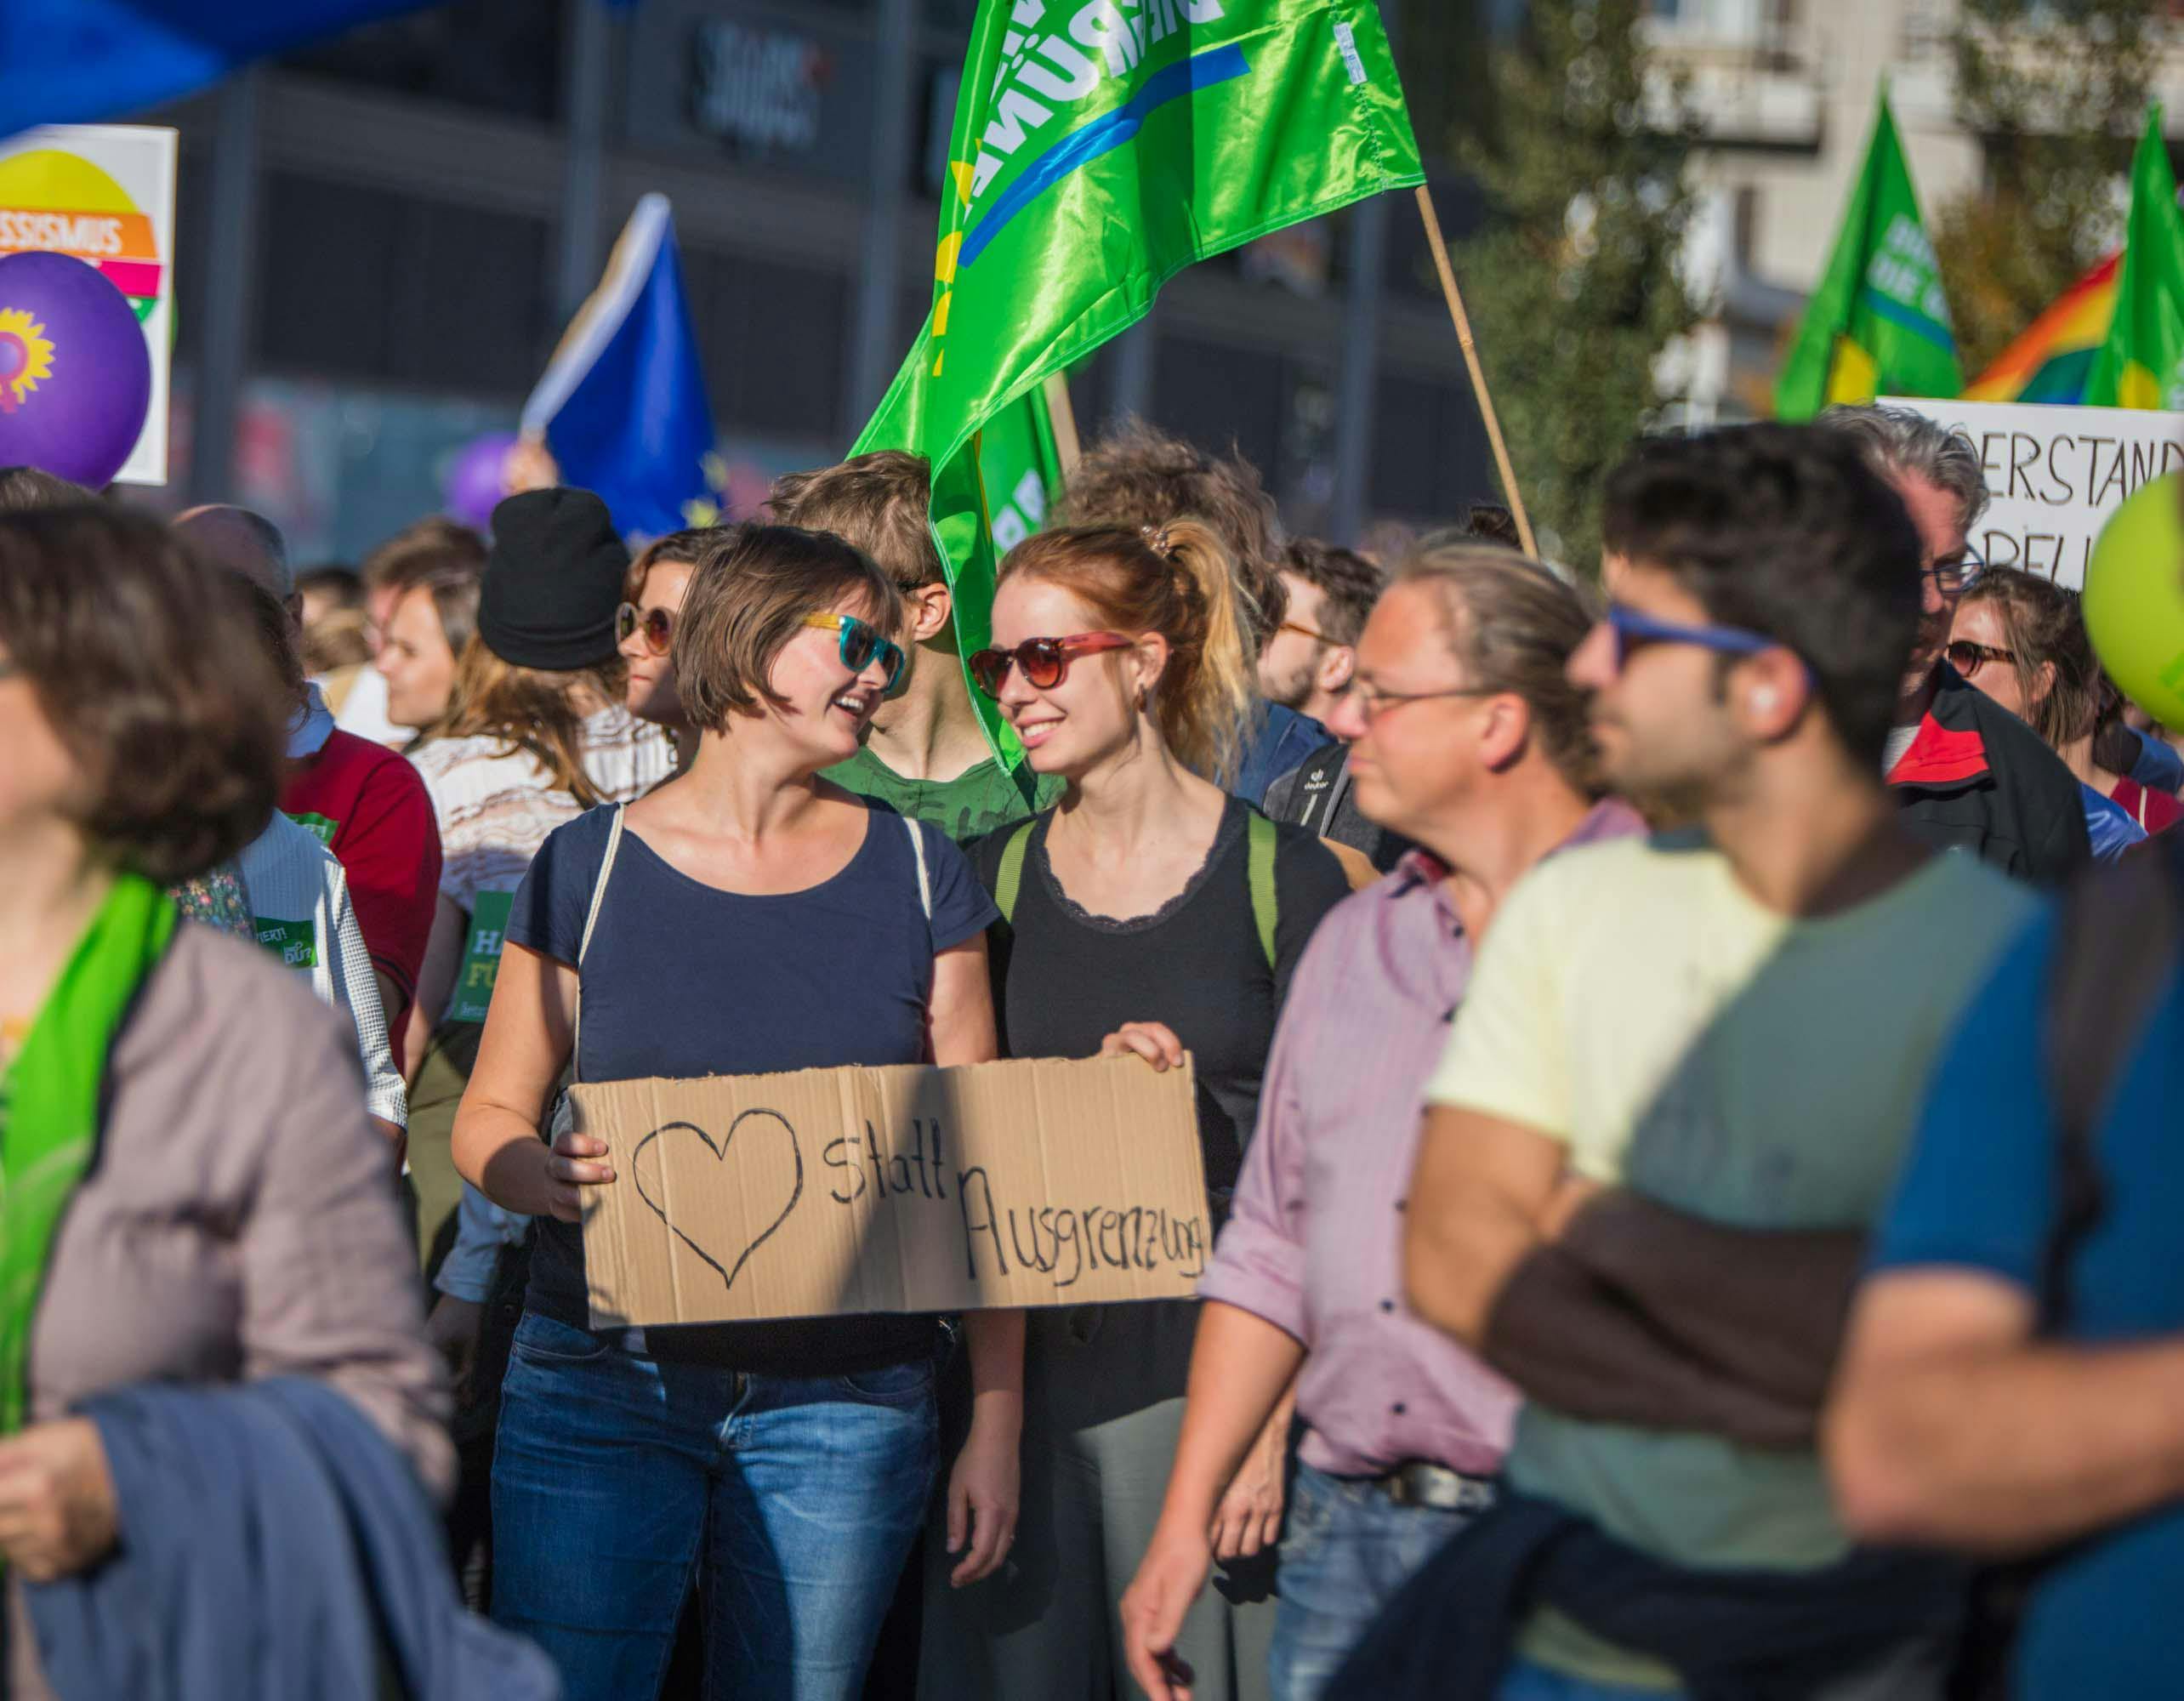 Grüne Mitglieder demonstrieren in Berlin und halten dabei Schilder und Fahnen hoch. Im Bildmittelpunkt stehen zwei junge Frauen, die sich anlächeln.